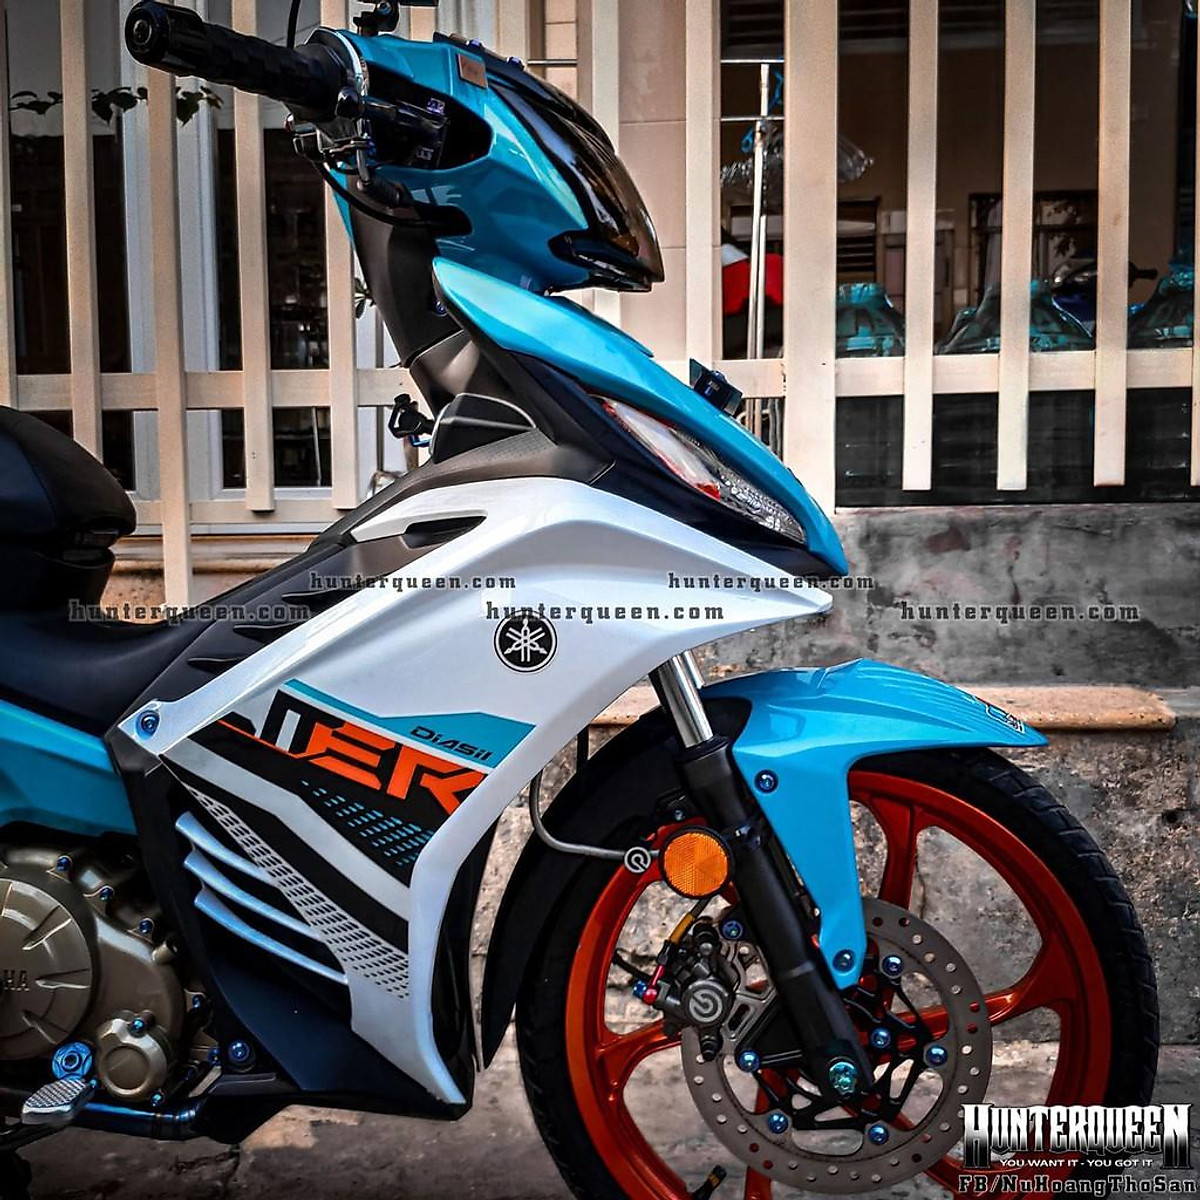 Exciter  Exciter 135 đời 2014 đỏ đen nguyên zin Giá  34tr5  Chợ Moto   Mua bán rao vặt xe moto pkl xe côn tay moto phân khối lớn moto pkl ô tô  xe hơi